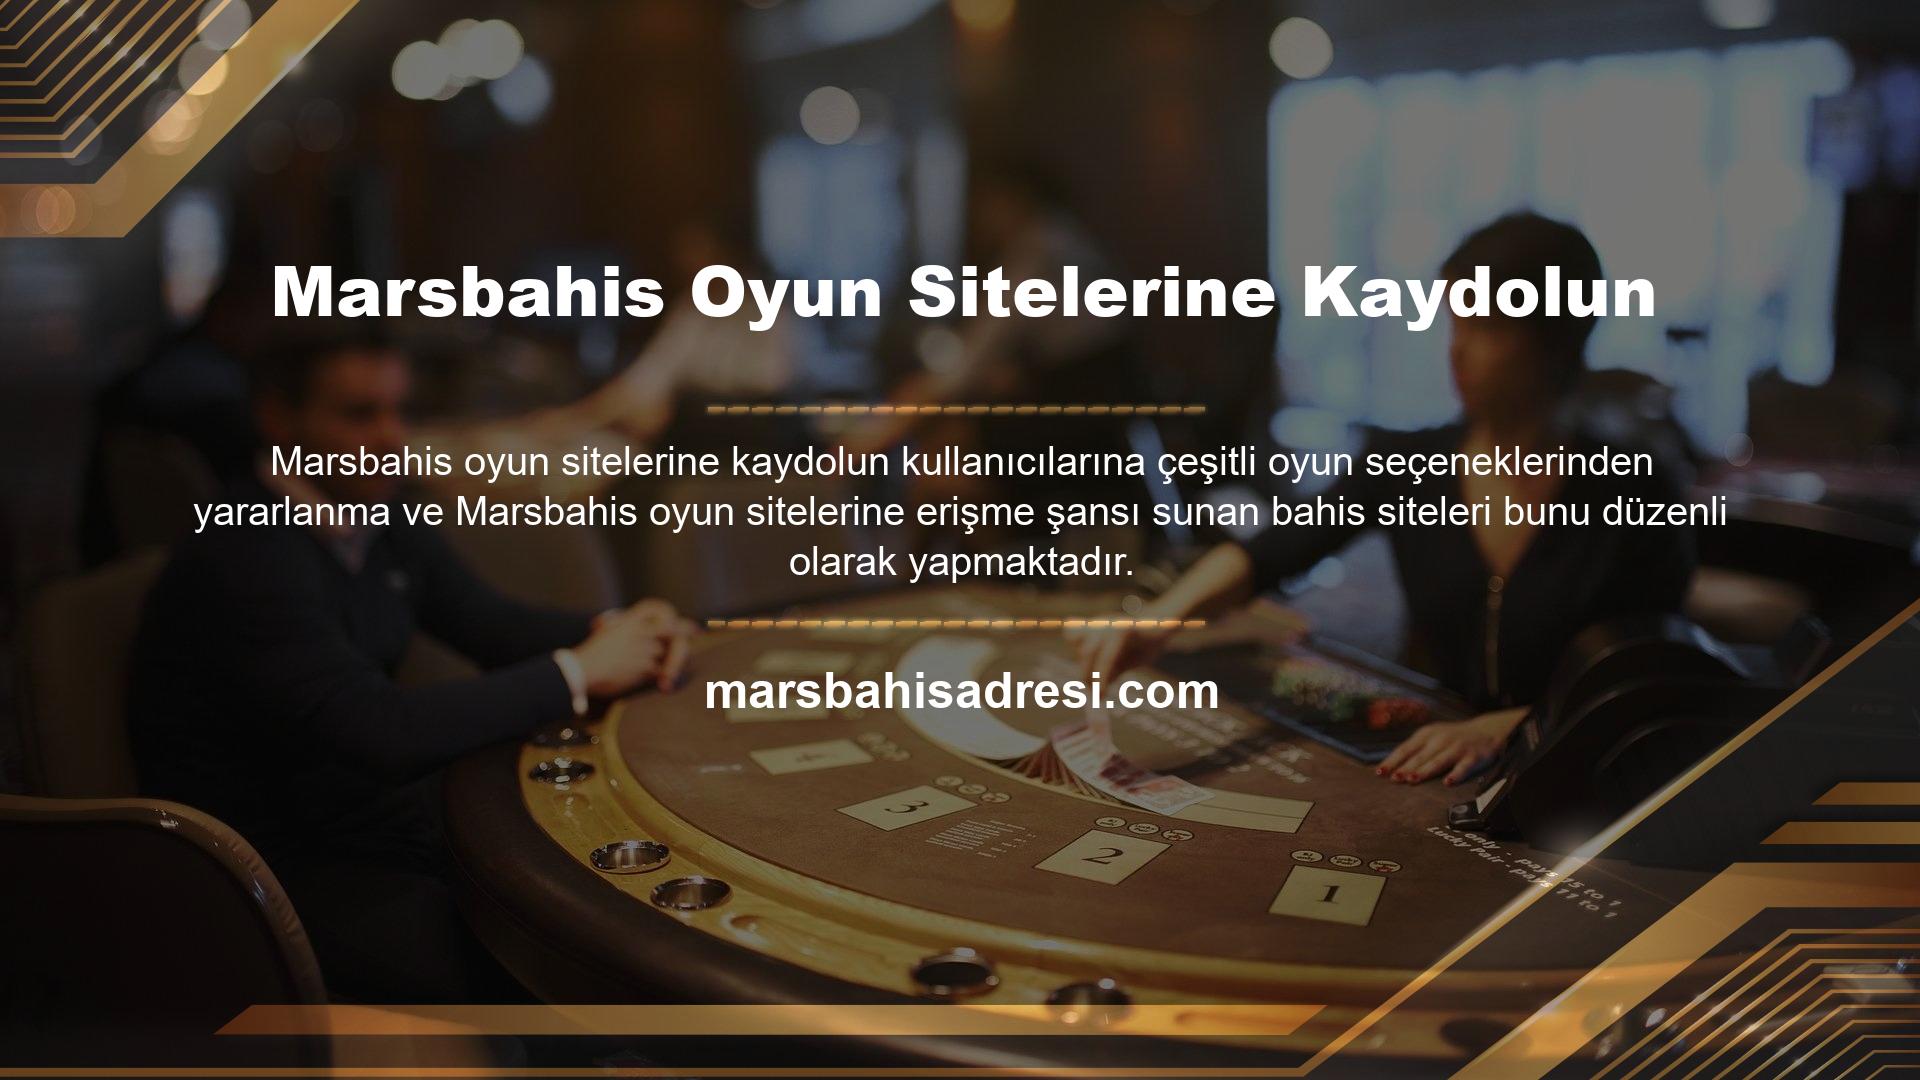 Marsbahis Girişi, spor bahis oyunları, canlı bahis seçenekleri ve casino bonusları dahil olmak üzere düzenli güncellemelerle artan oyun potansiyeli sunar